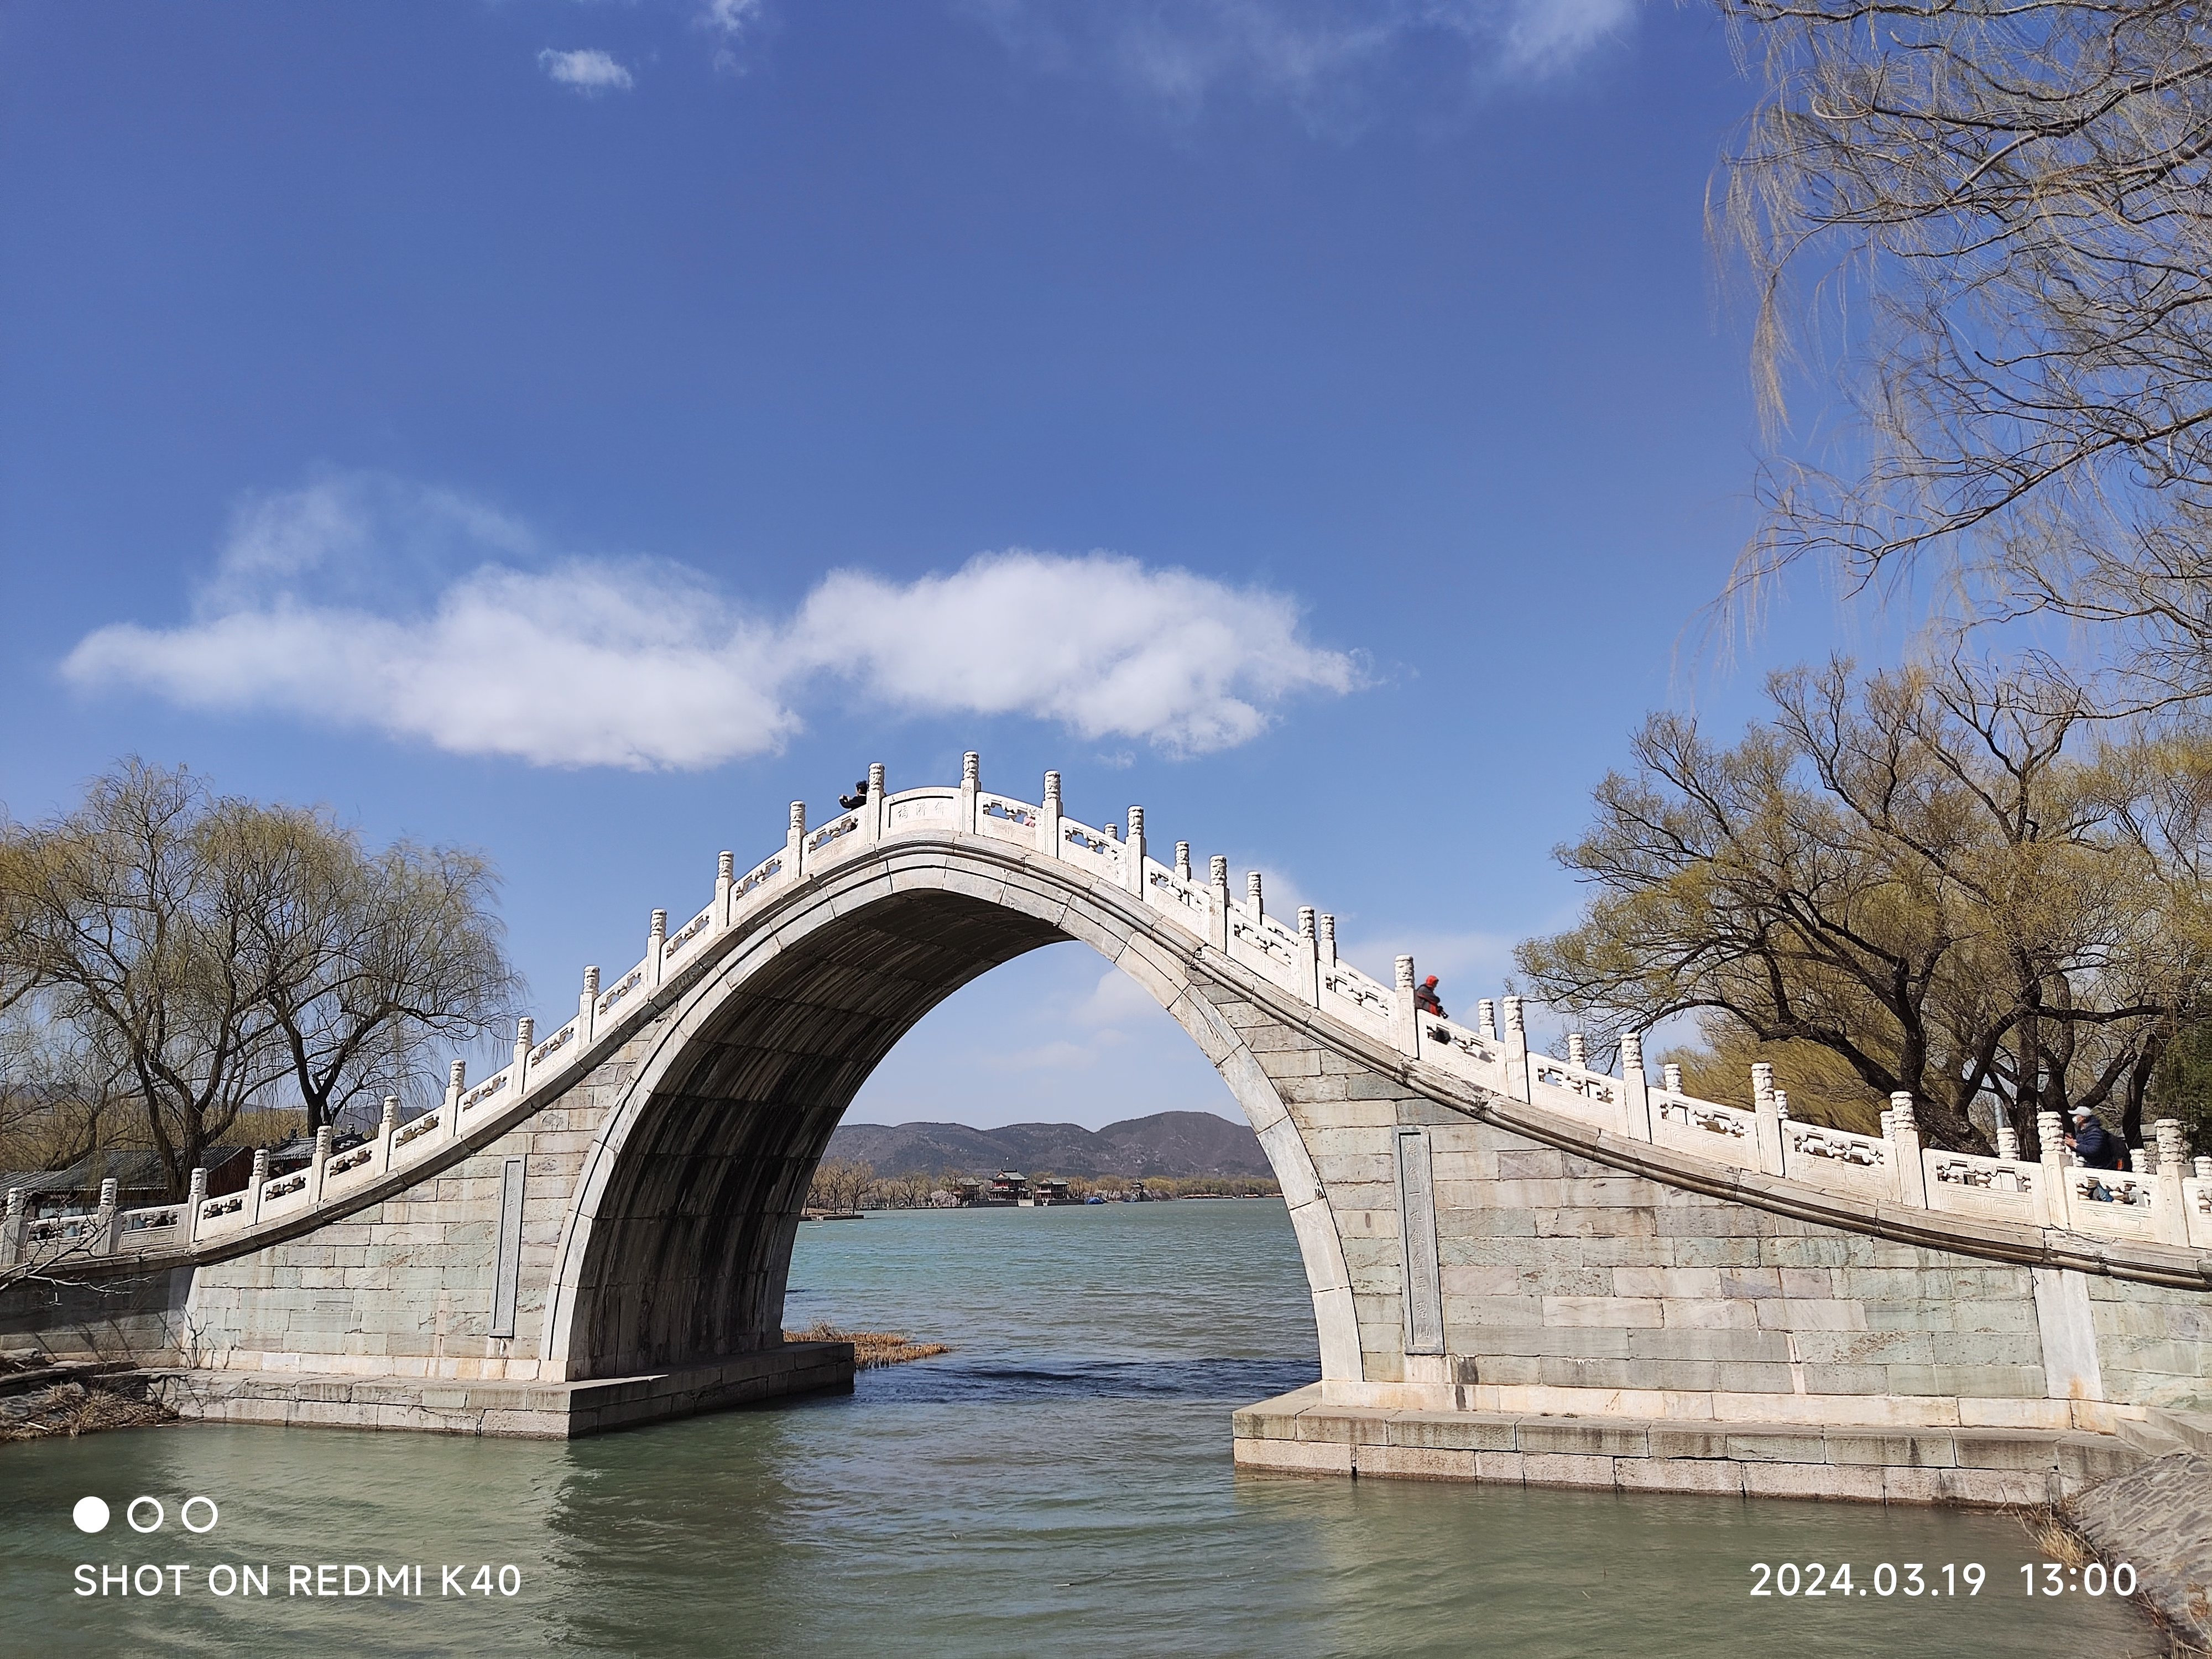 颐和园昆明湖上的几个漂亮石桥